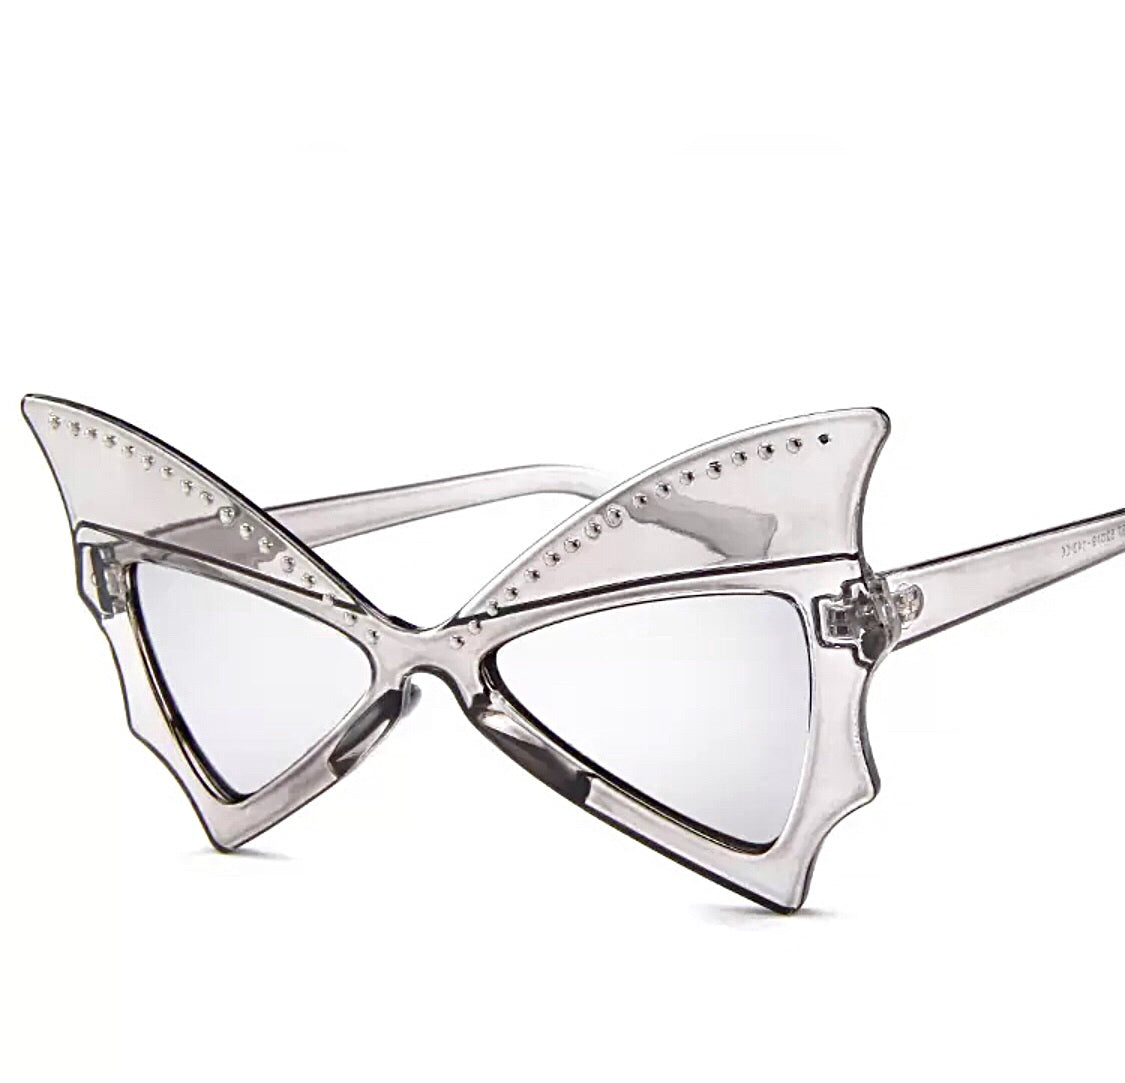 Bat Wing Sunglasses Clear